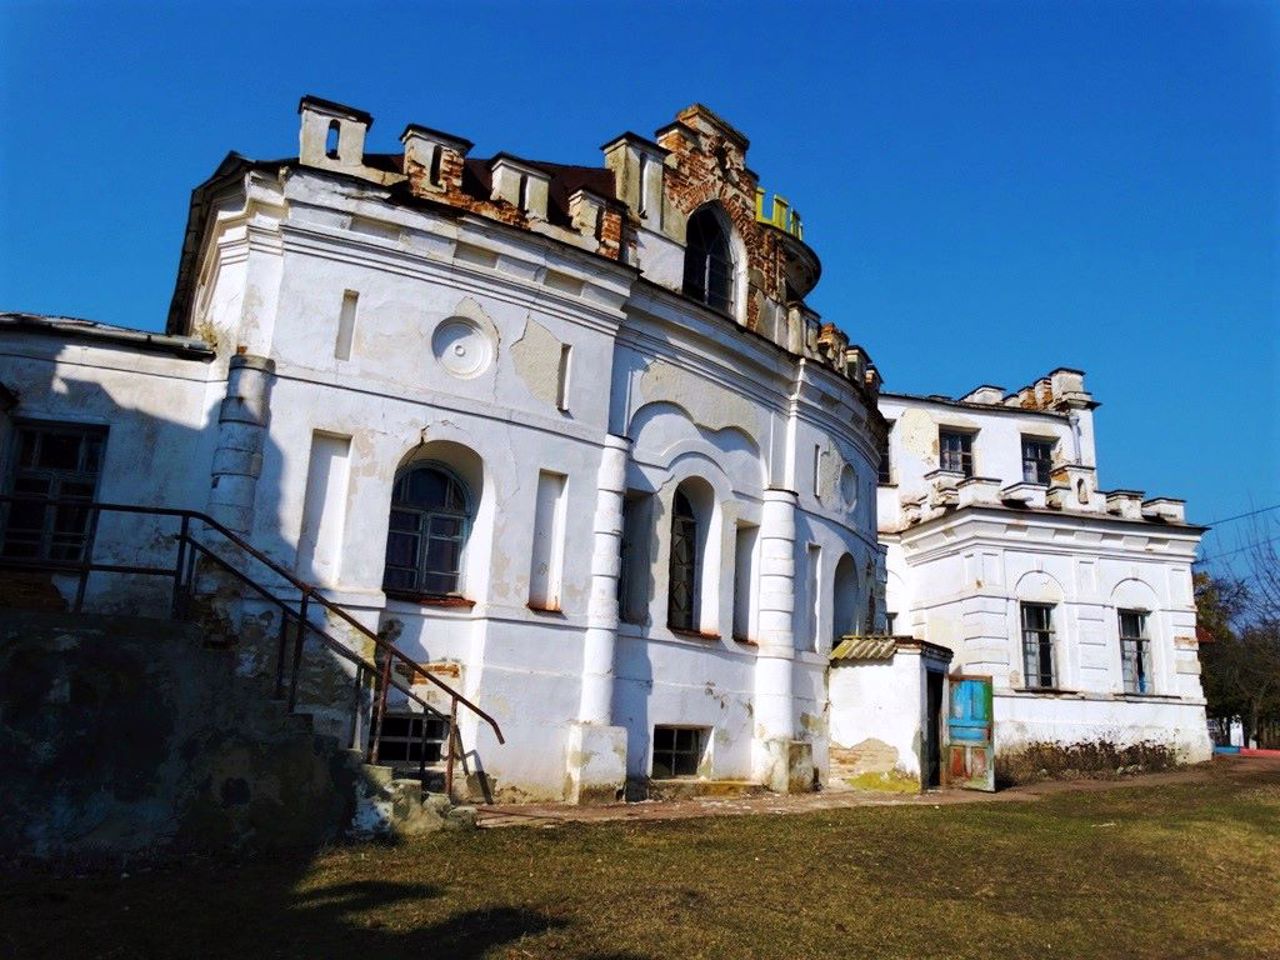 Дворец Румянцева-Задунайского, Вишенки